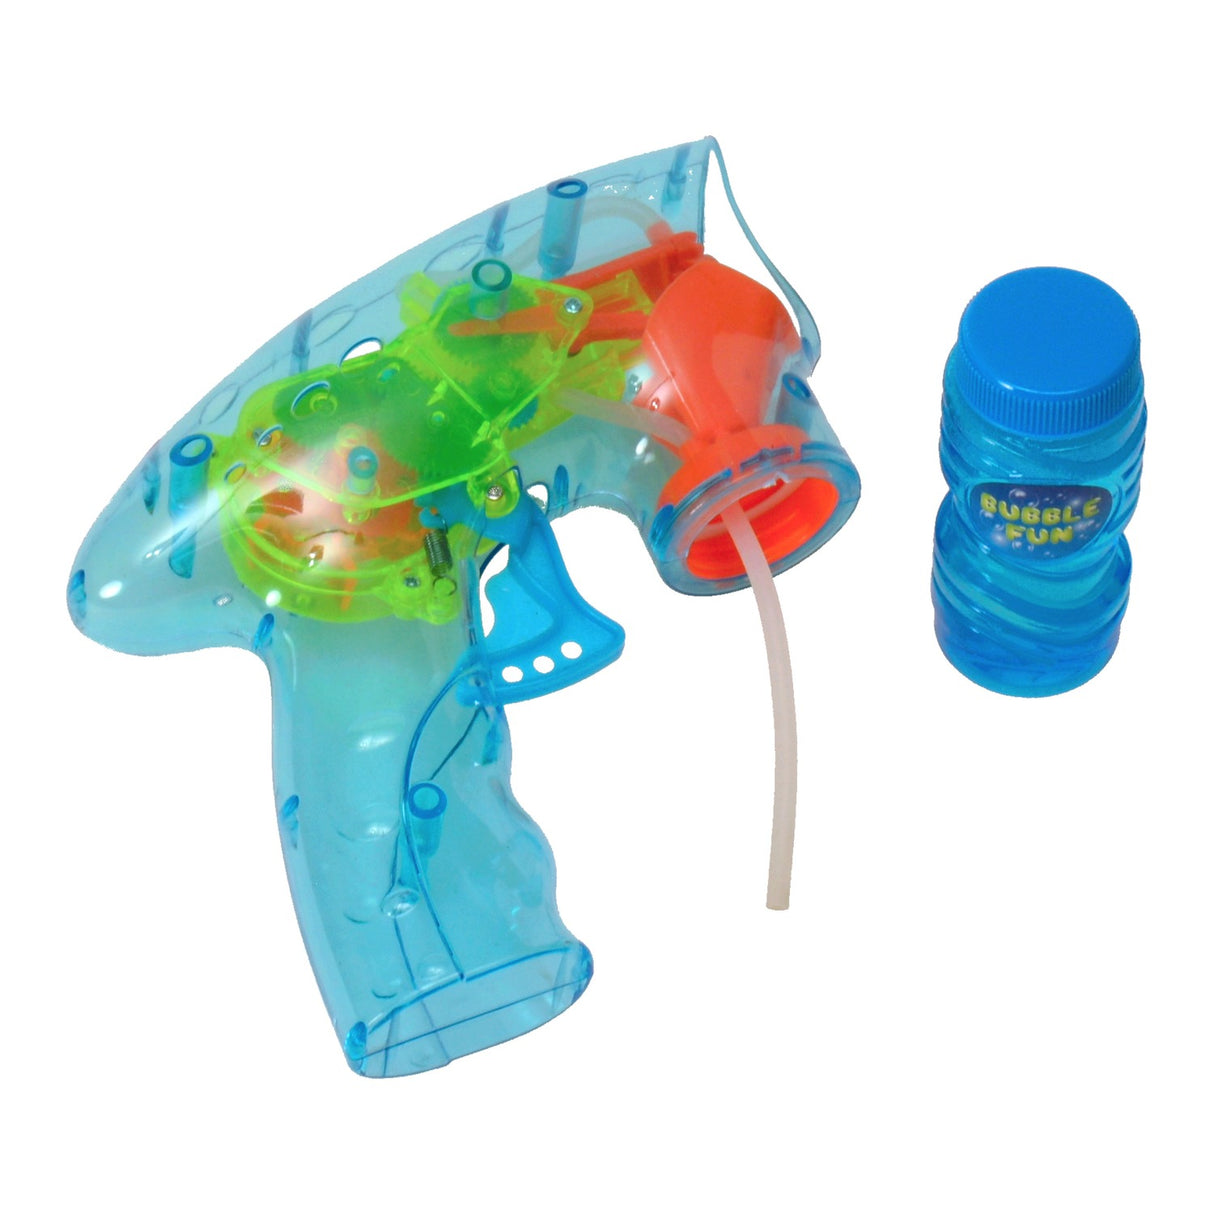 Seifenblasen Spielzeugpistole mit Seifenlauge